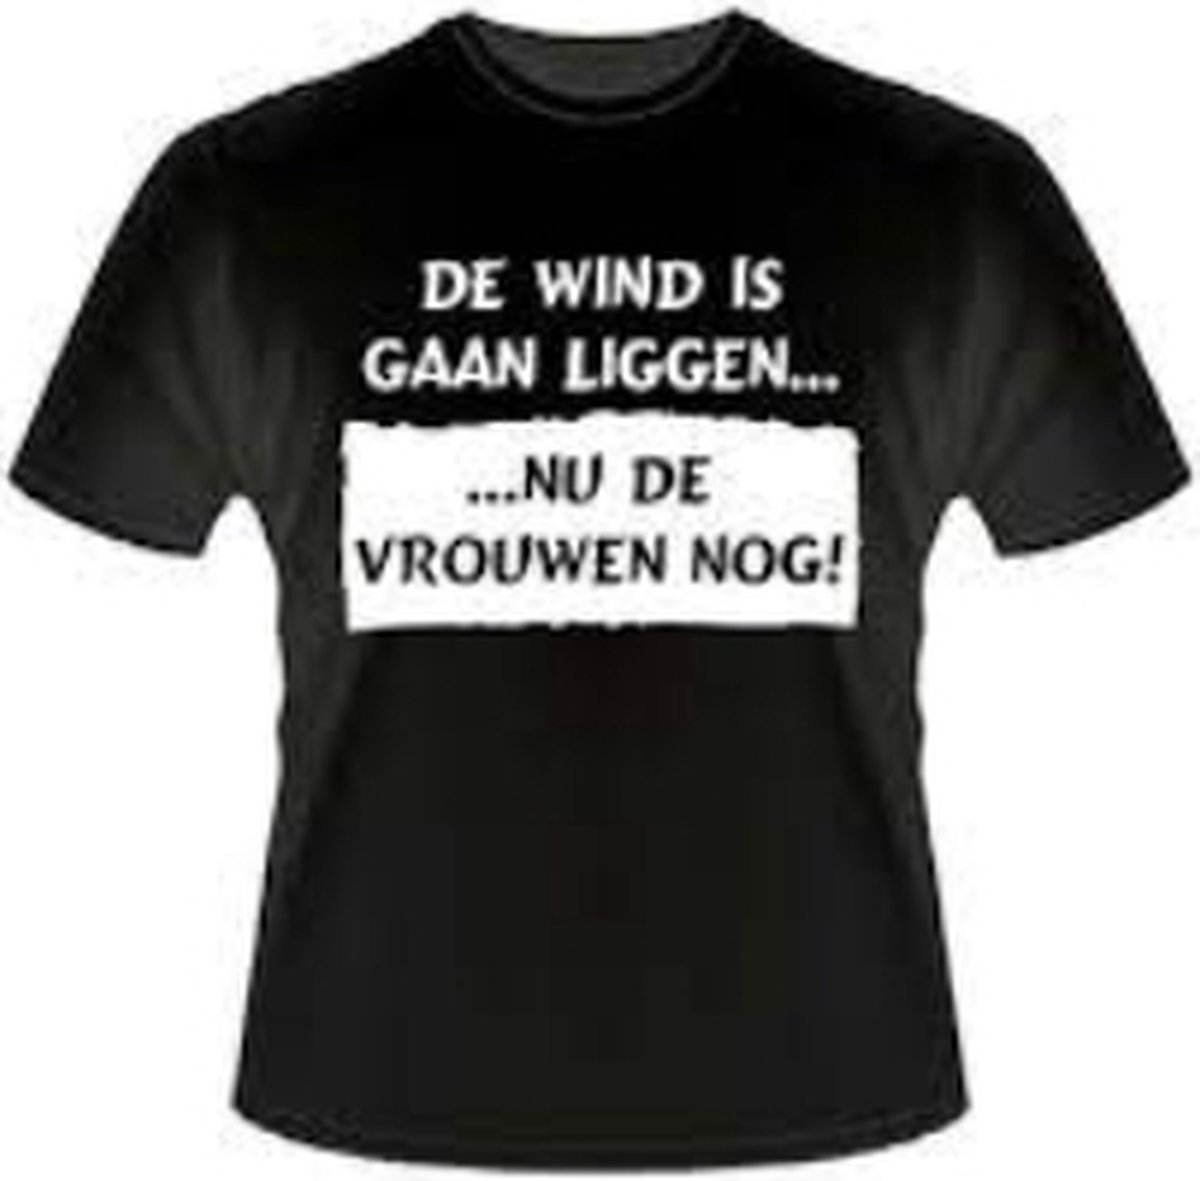 Paperdreams - T-shirt - De Wind is gaan liggen ... Nu de vrouwen nog! - XL